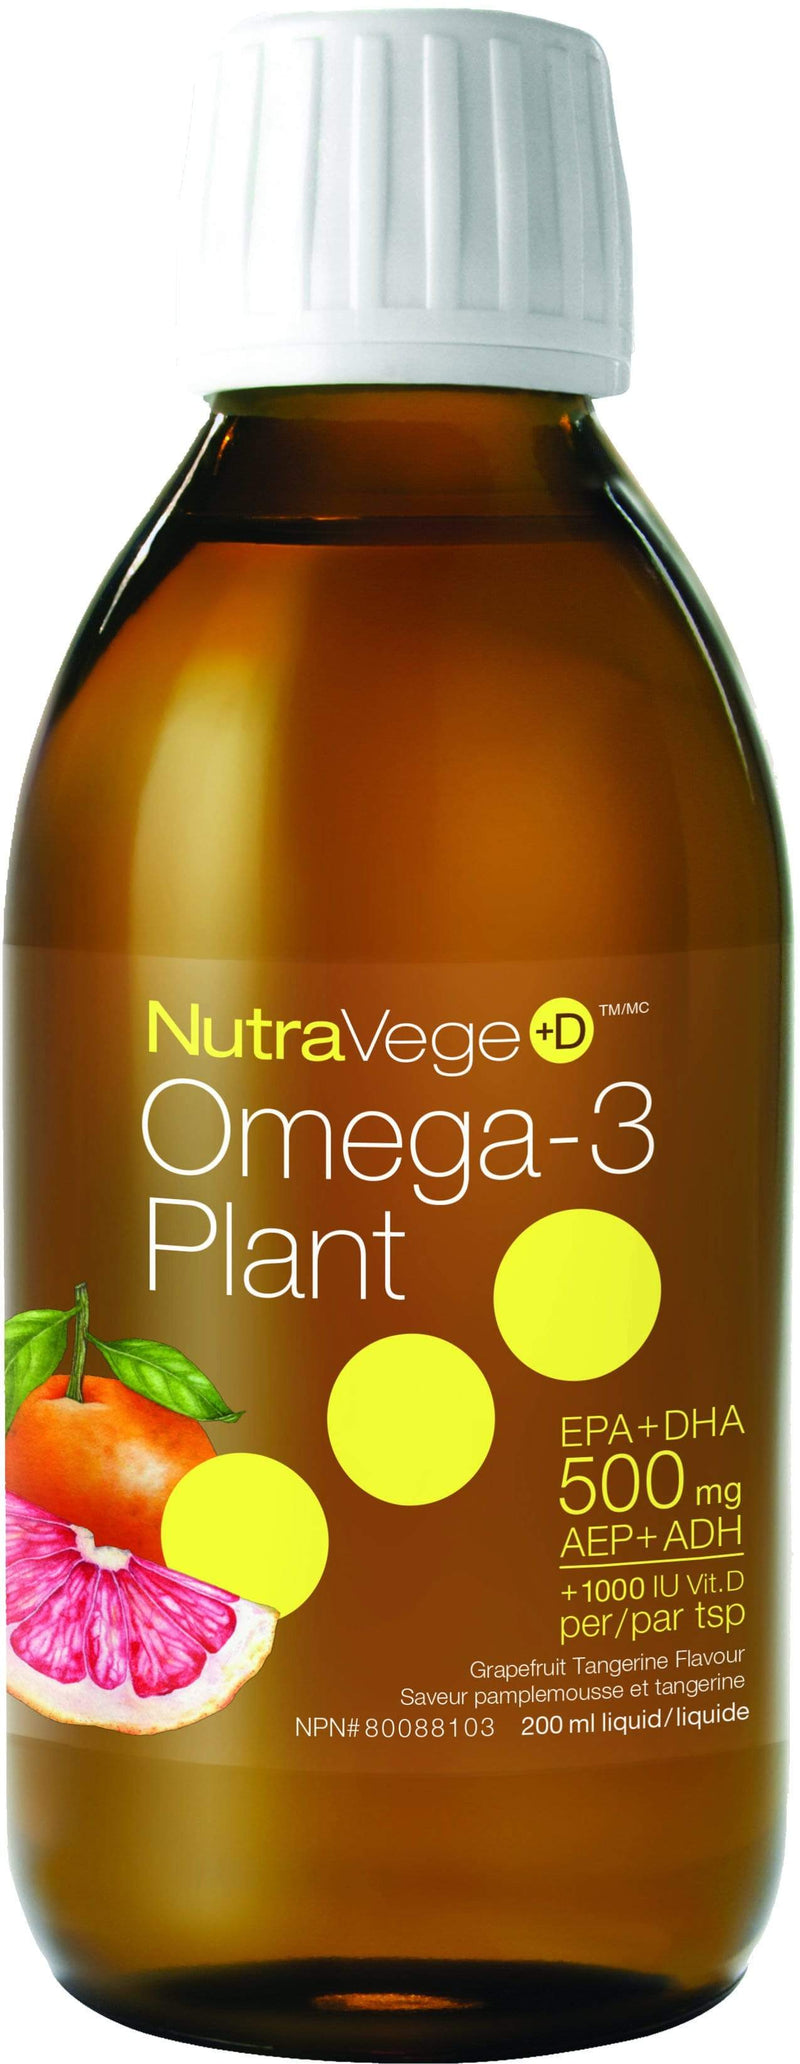 NutraVege+D 오메가-3 식물 + 비타민 D - 자몽 탠저린(200mL)